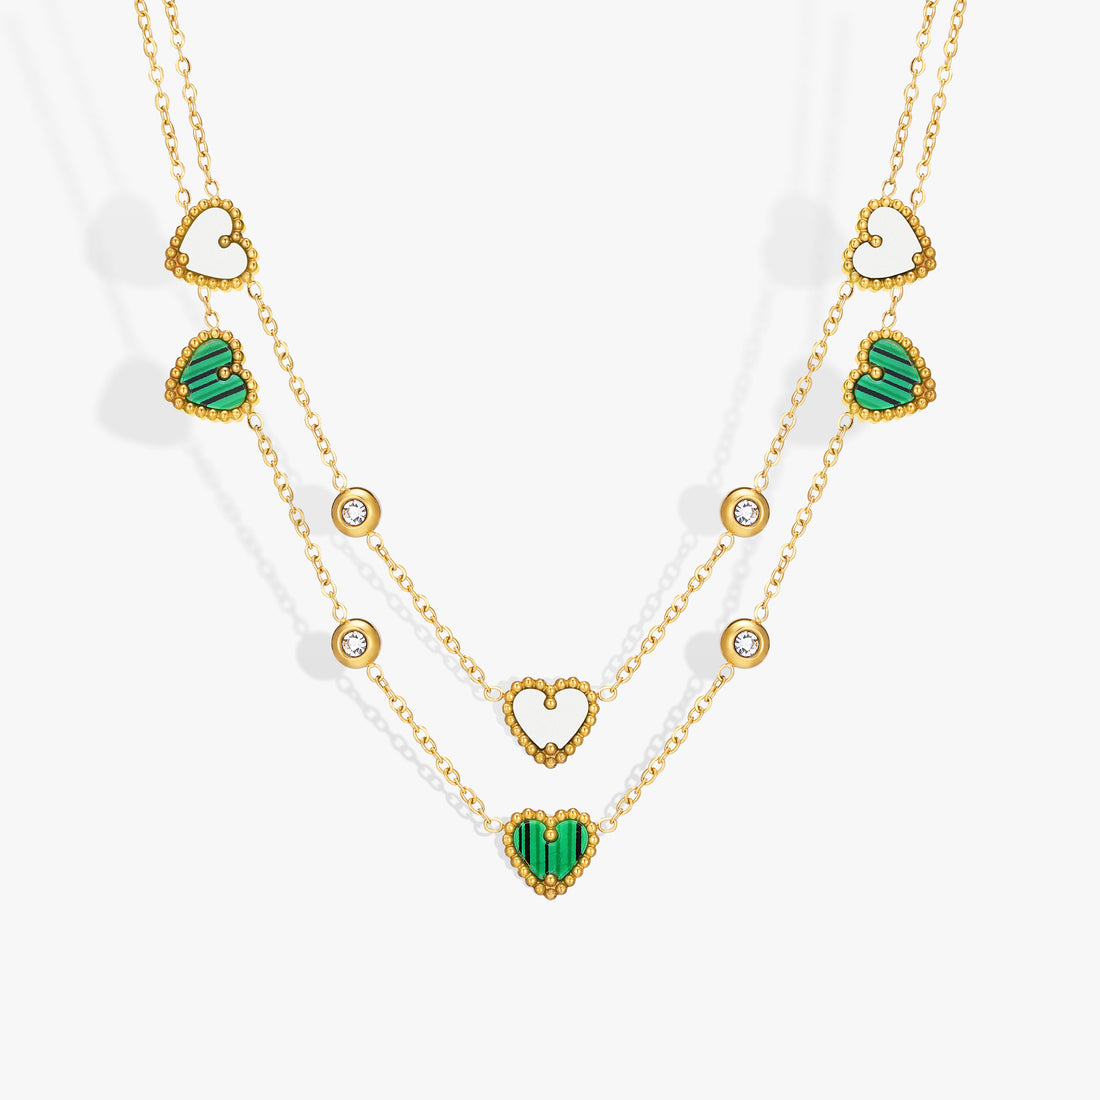 Triple-Heart Pendant Necklace